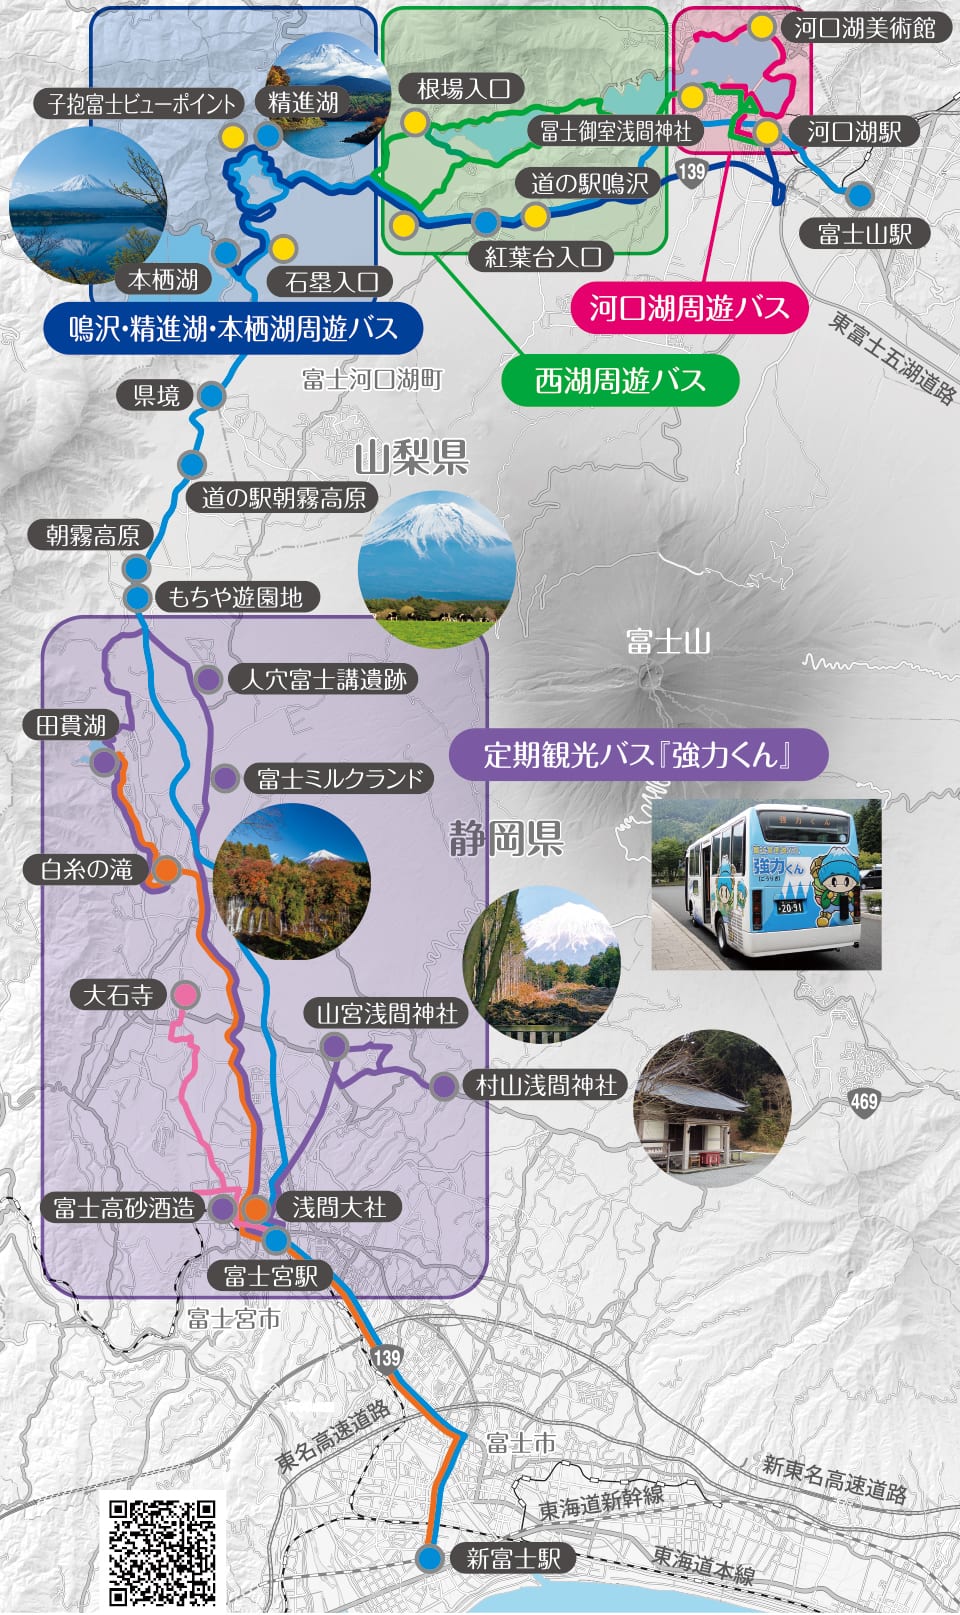 富士五湖交通|周遊巴士路線、景點交通、交通票券整理